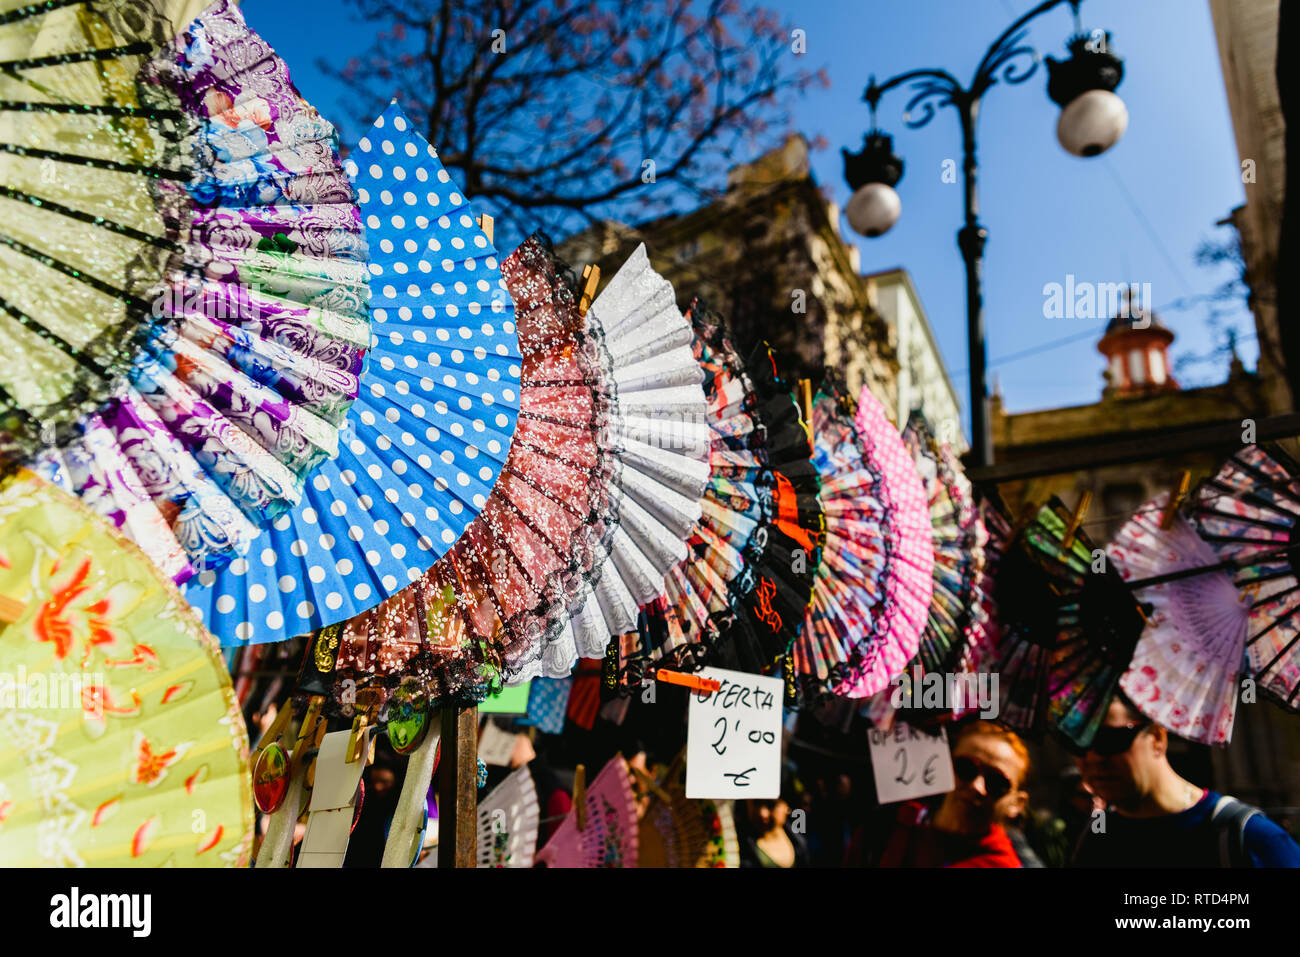 Valencia, Spagna - 24 Febbraio 2019: tipico colorato flamenco spagnolo ventilatori per la vendita in un mercato di strada in primavera. Foto Stock